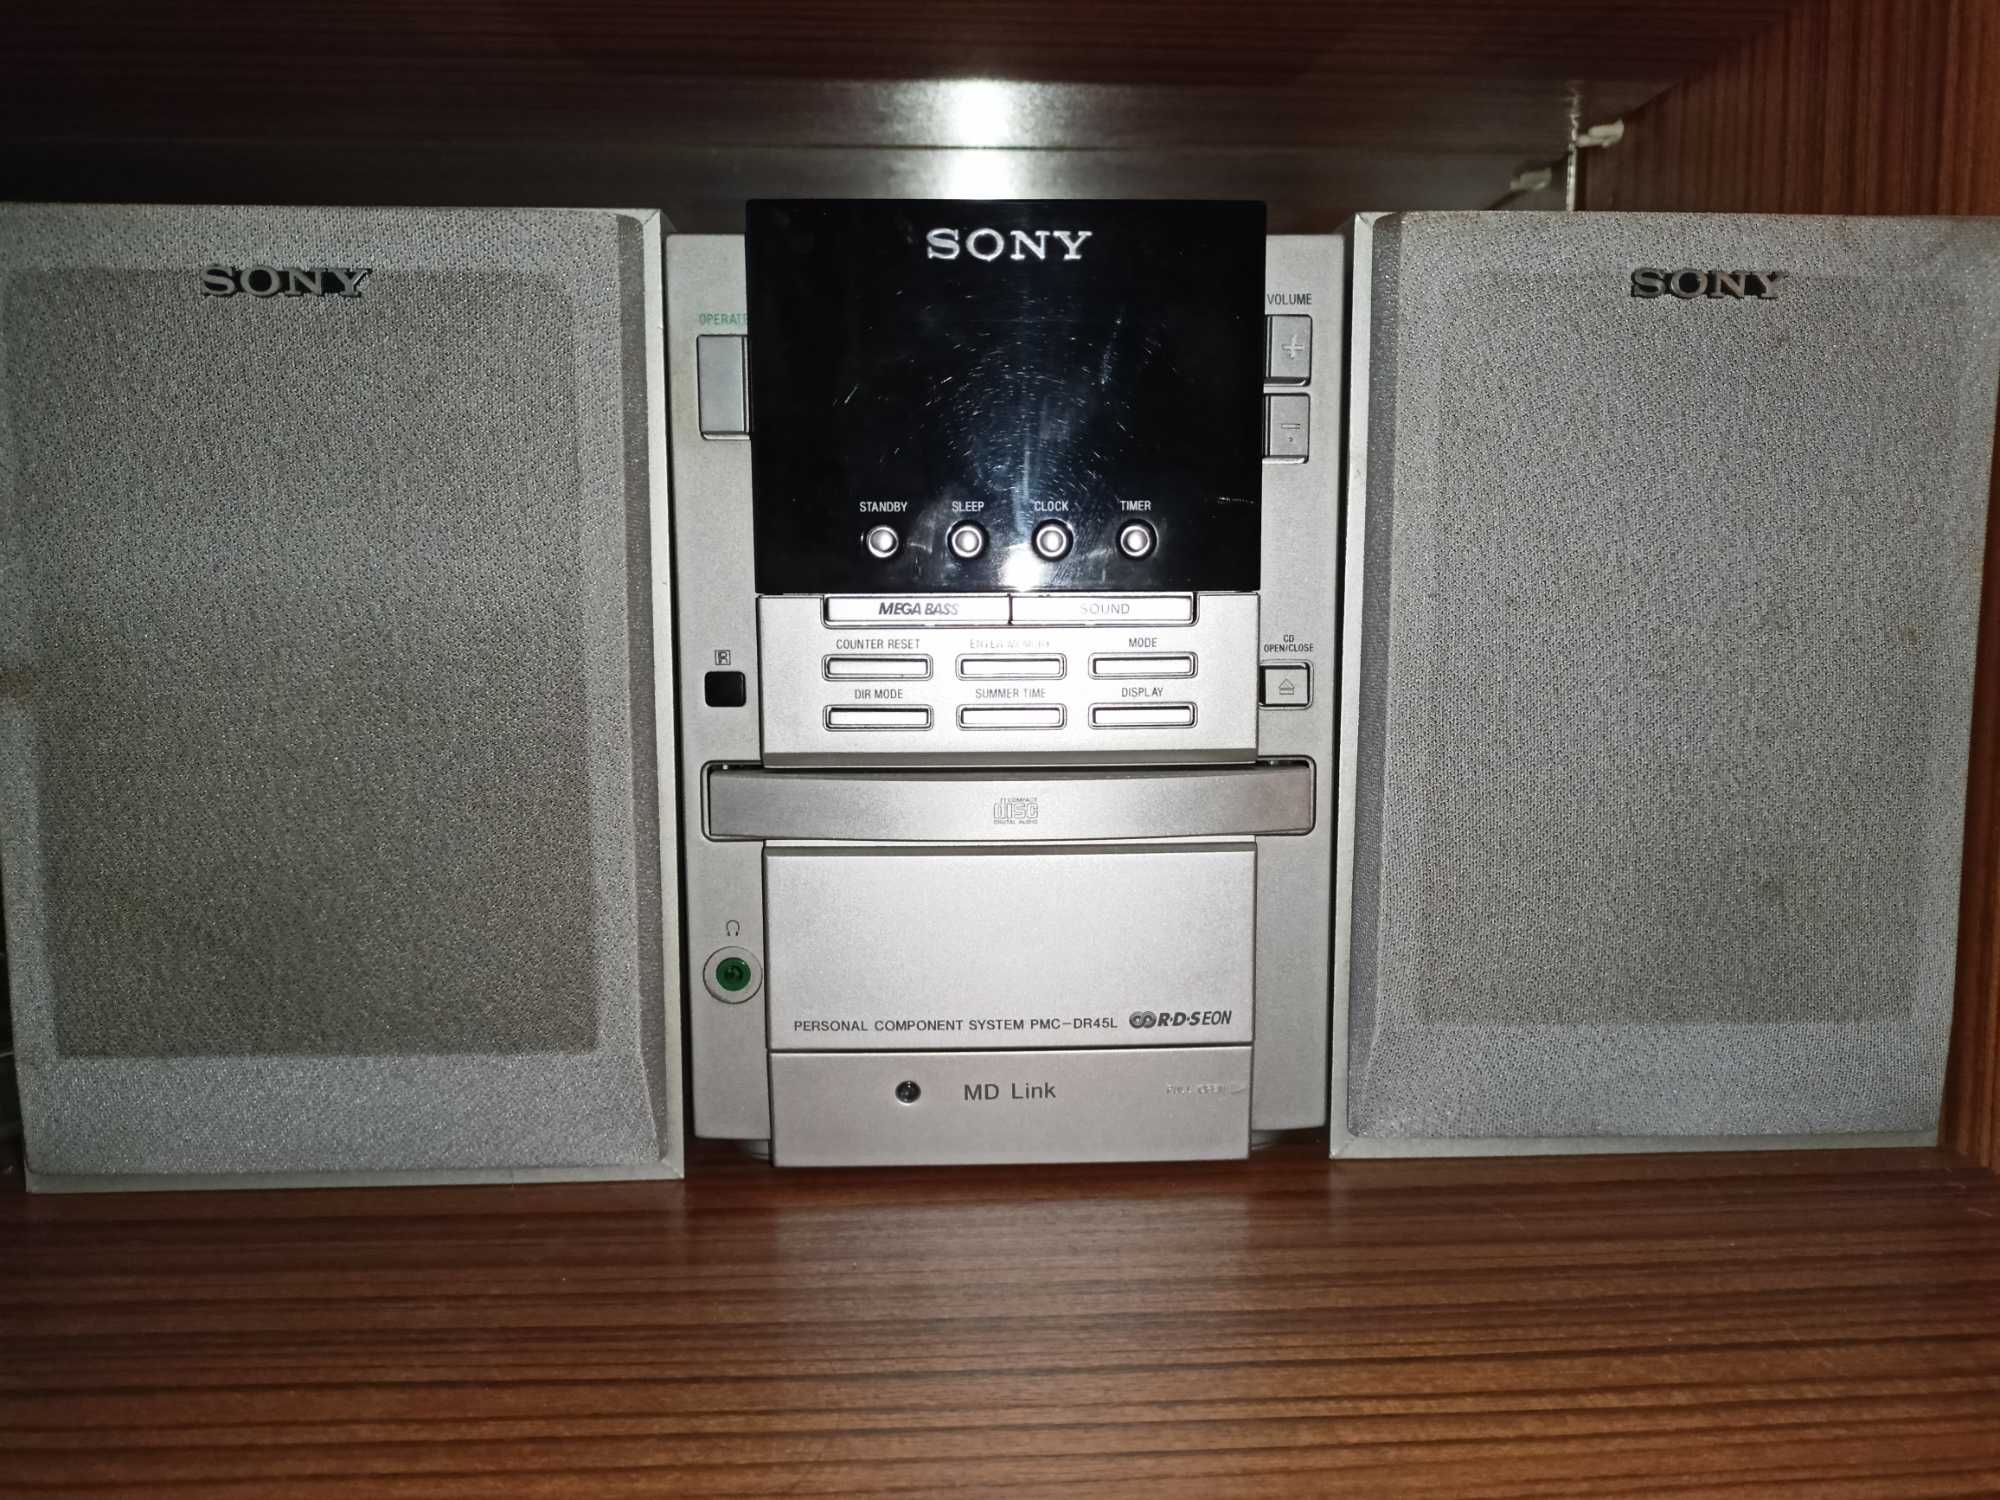 Mini wieża Sony PMC-DR45L